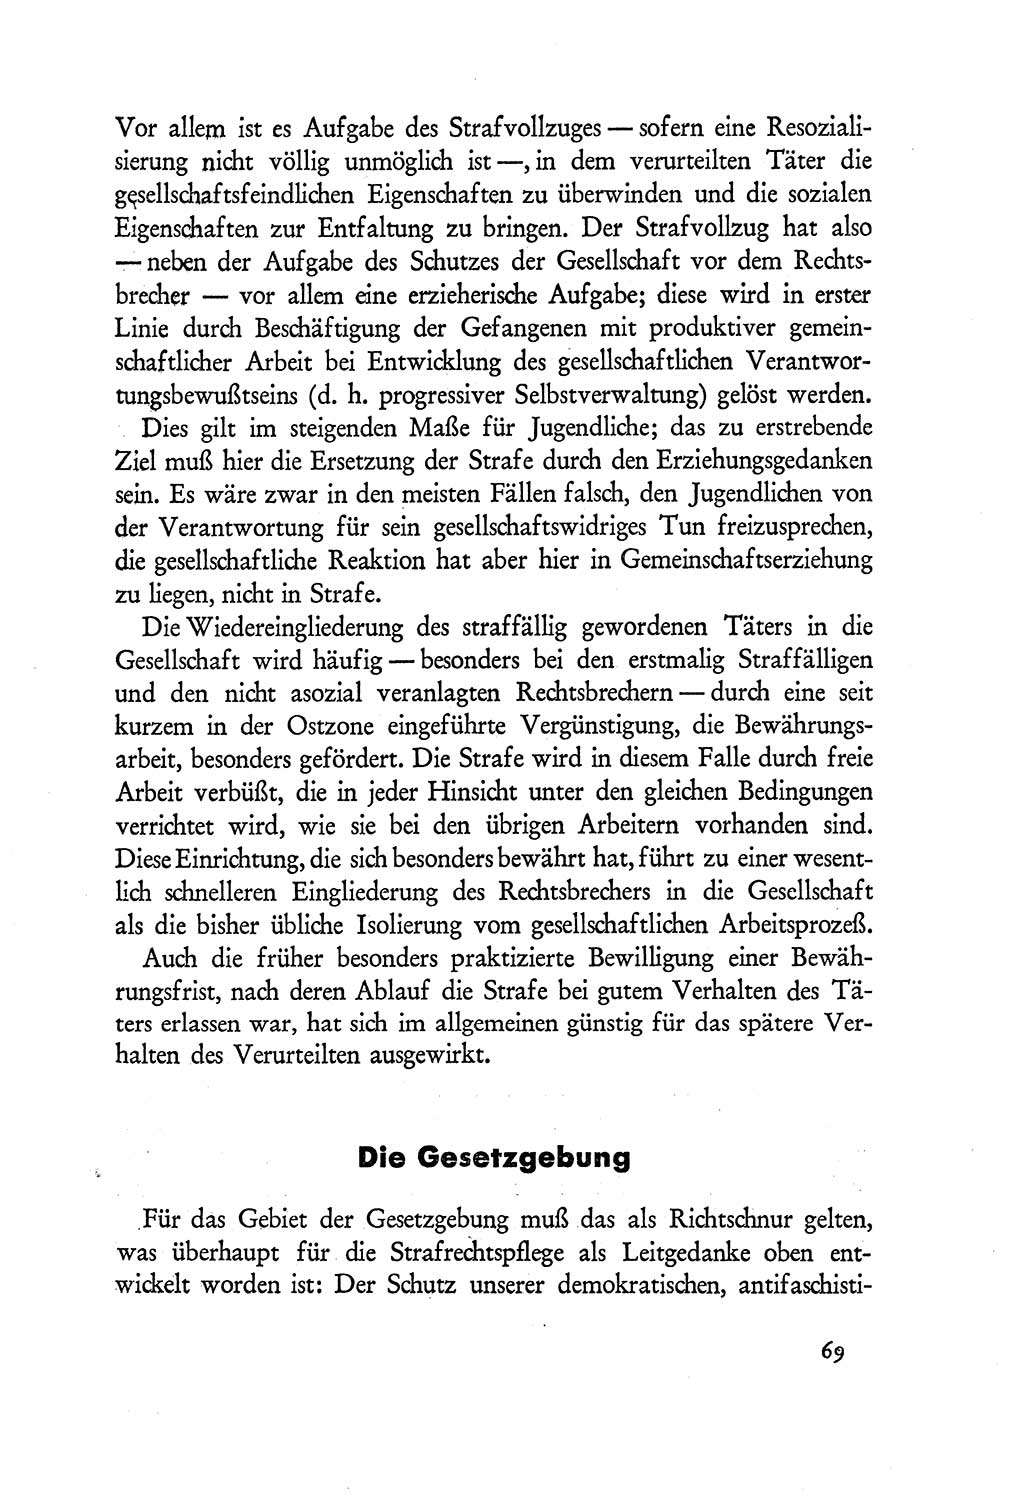 Probleme eines demokratischen Strafrechts [Sowjetische Besatzungszone (SBZ) Deutschlands] 1949, Seite 69 (Probl. Strafr. SBZ Dtl. 1949, S. 69)